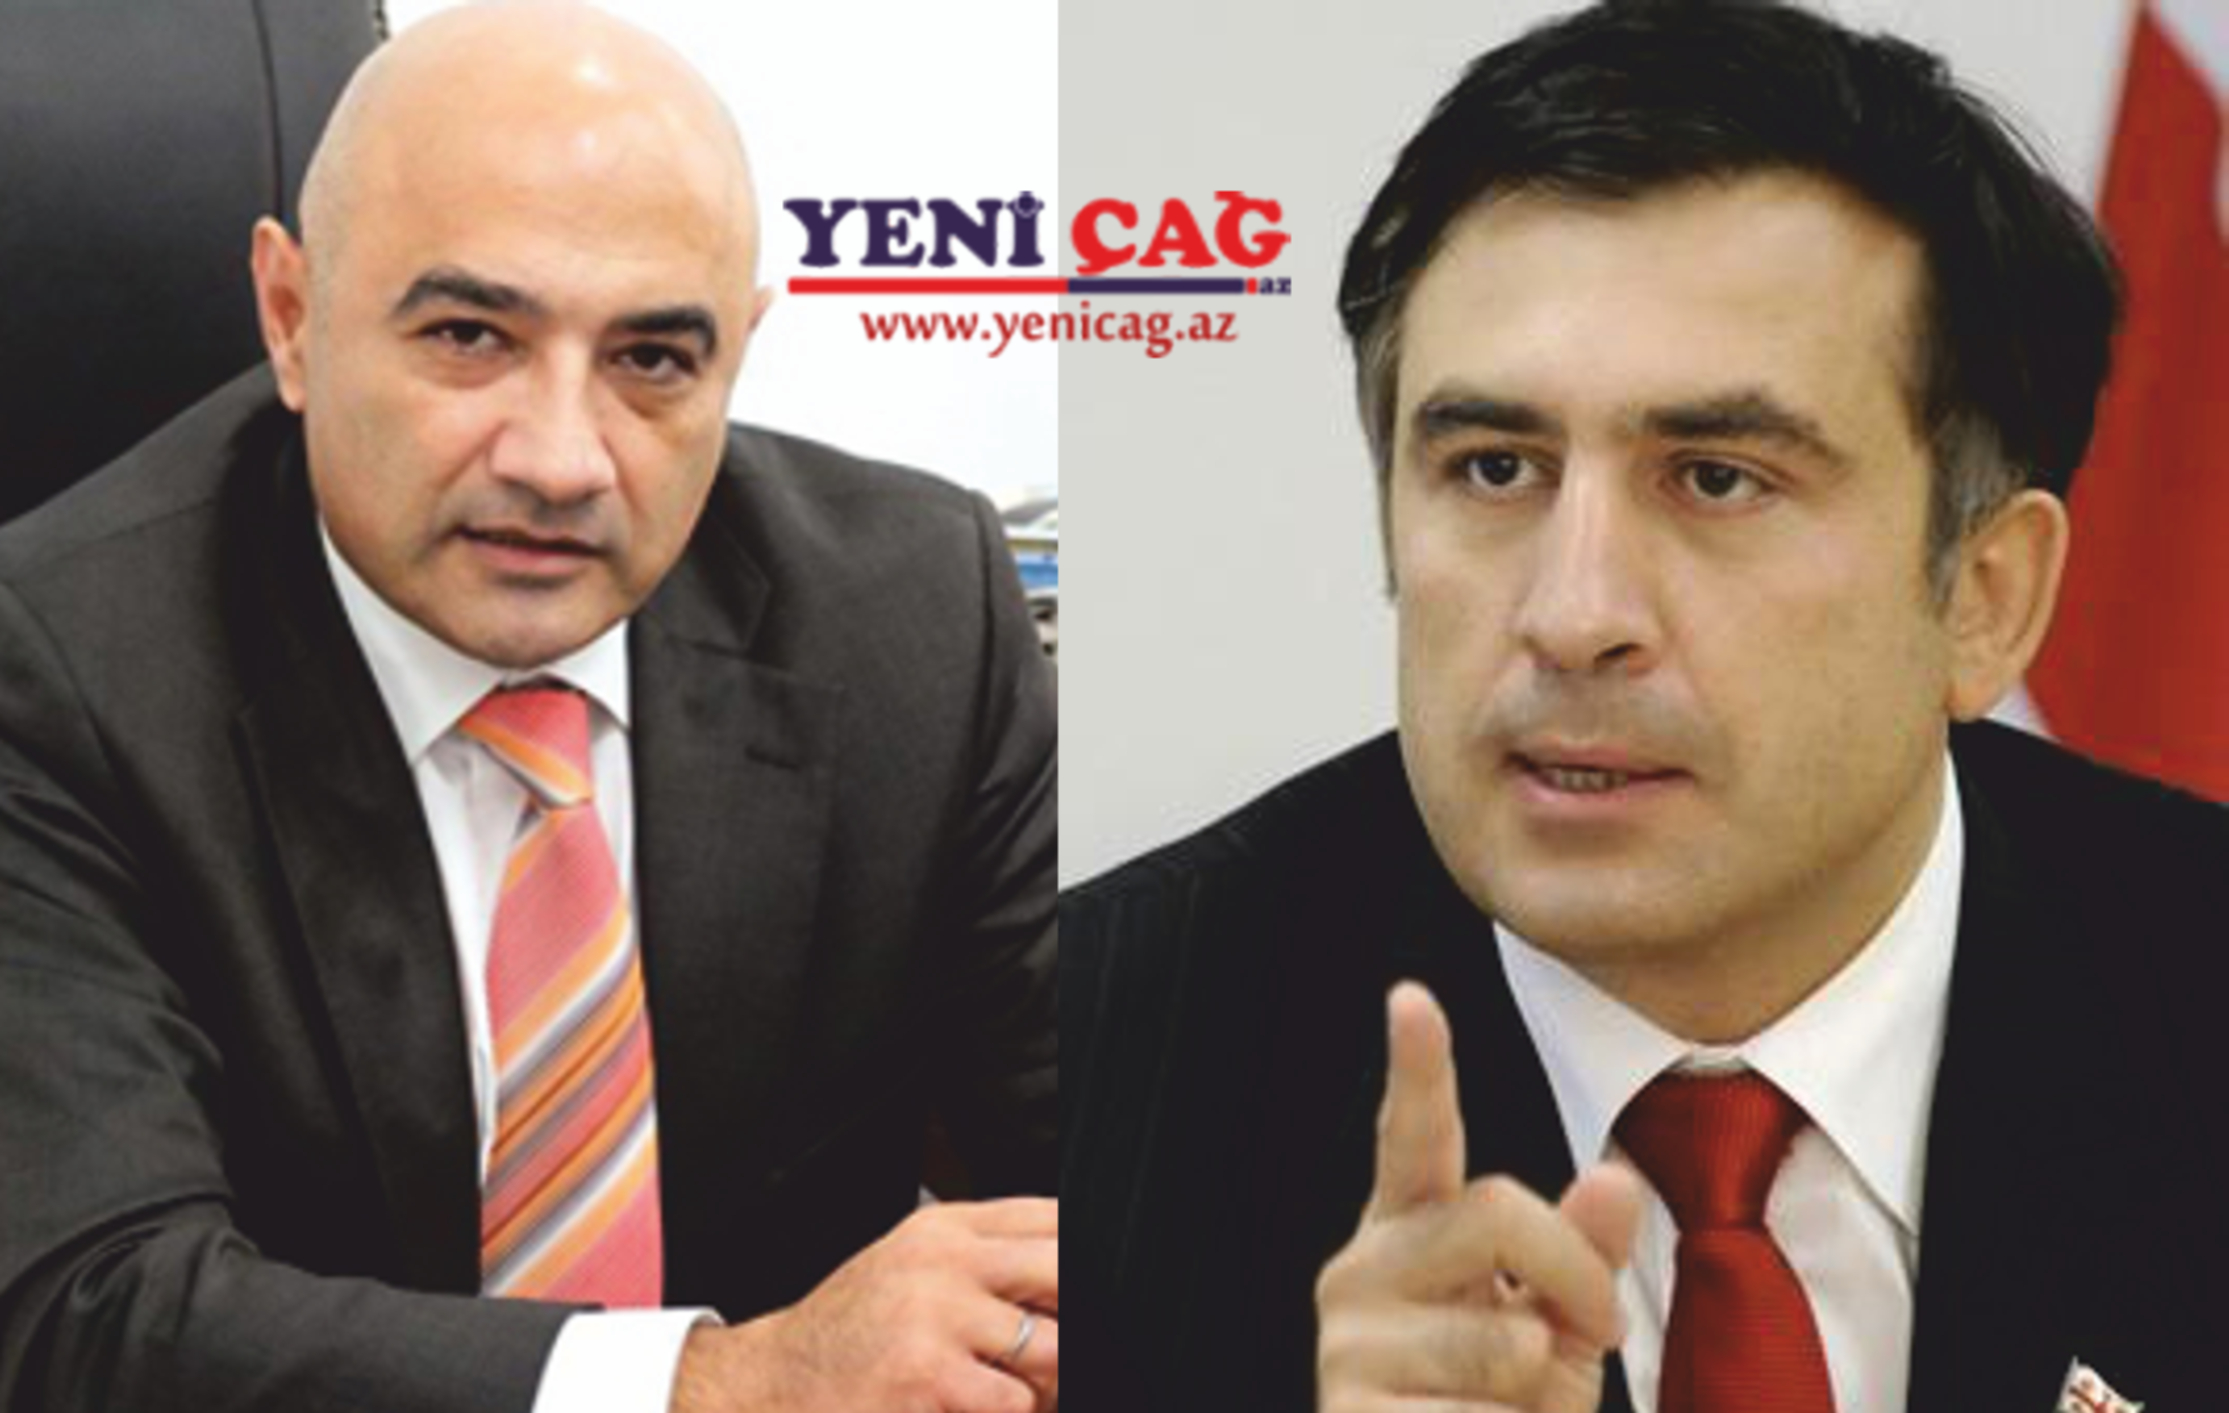 Azərbaycanlı politoloq sabiq prezidenti avanturist adlandırdı